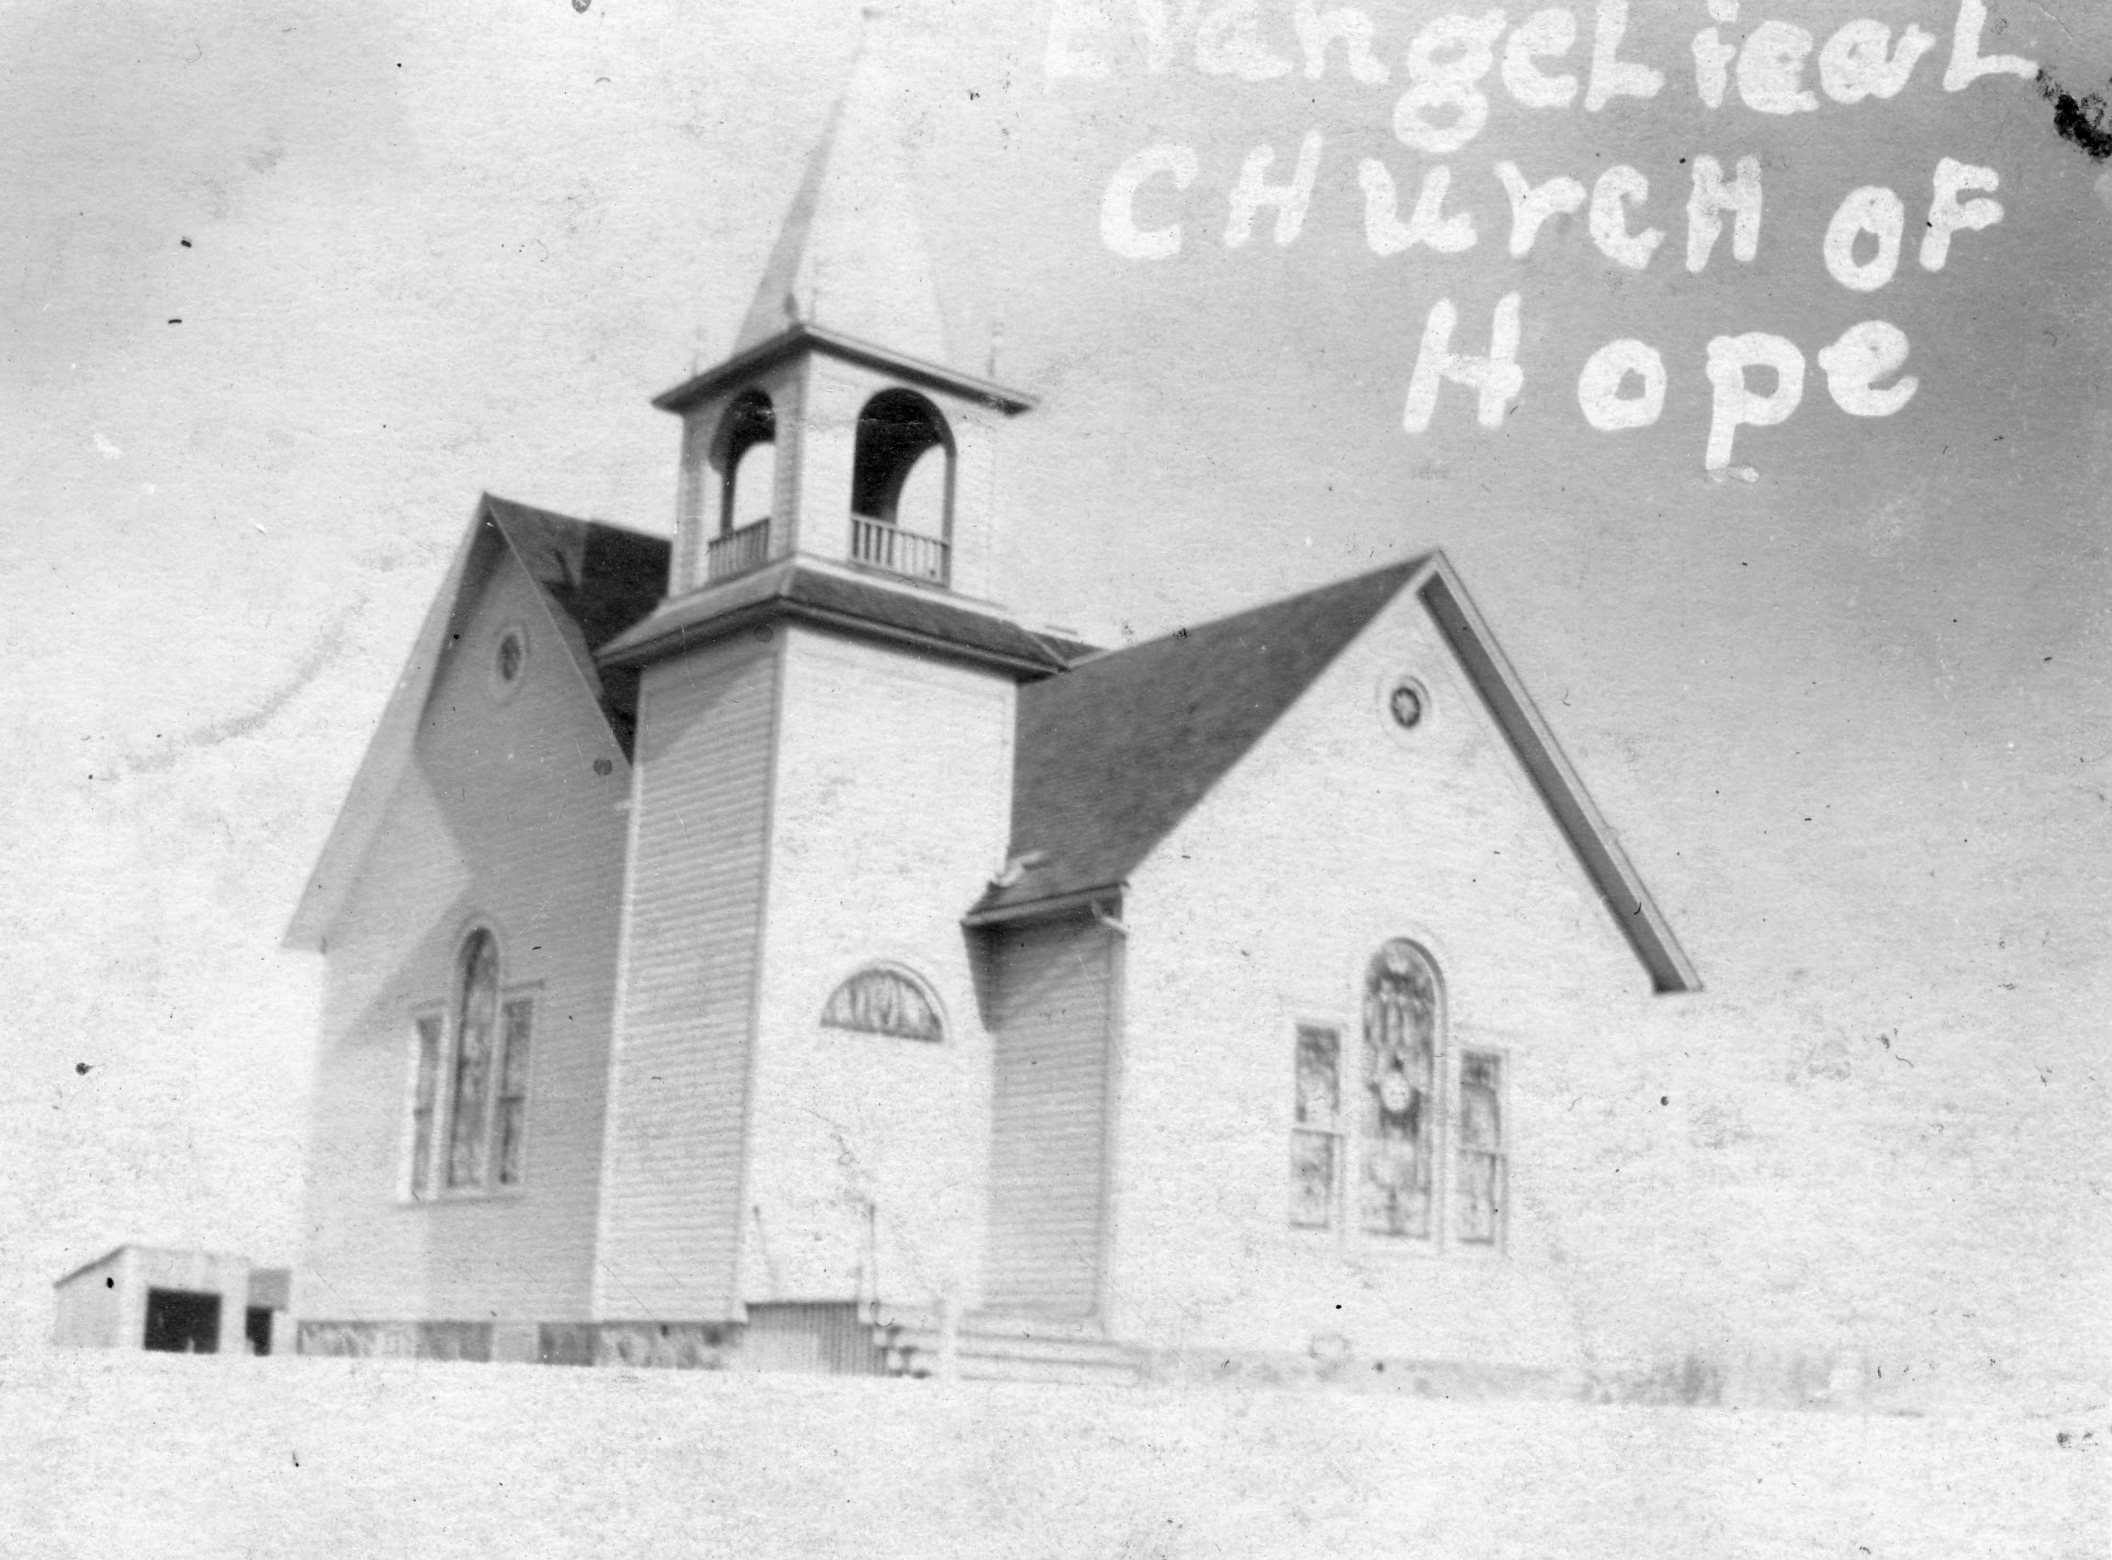 The hope church abt 1915